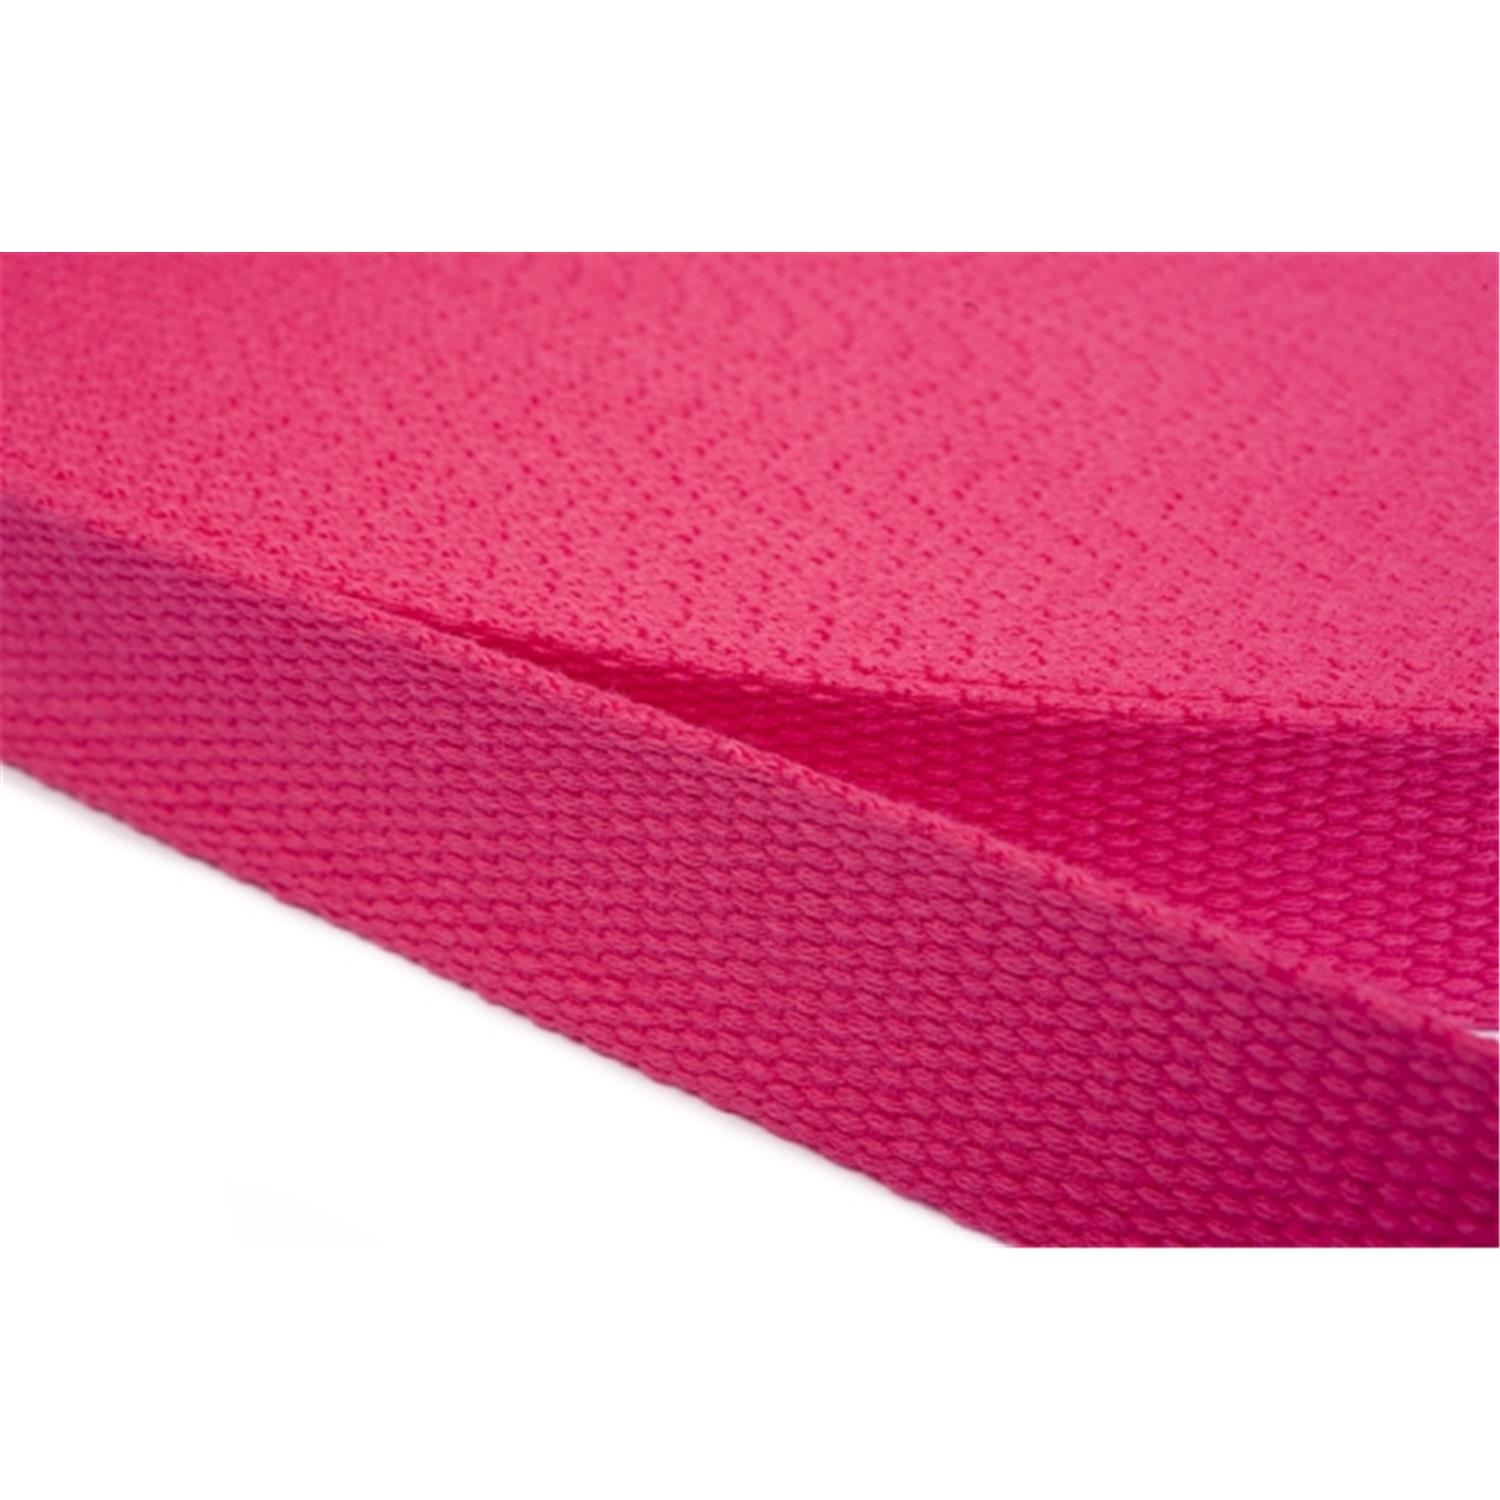 Gurtband aus Baumwolle 10mm in 20 Farben 07 - rosa/pink 12 Meter